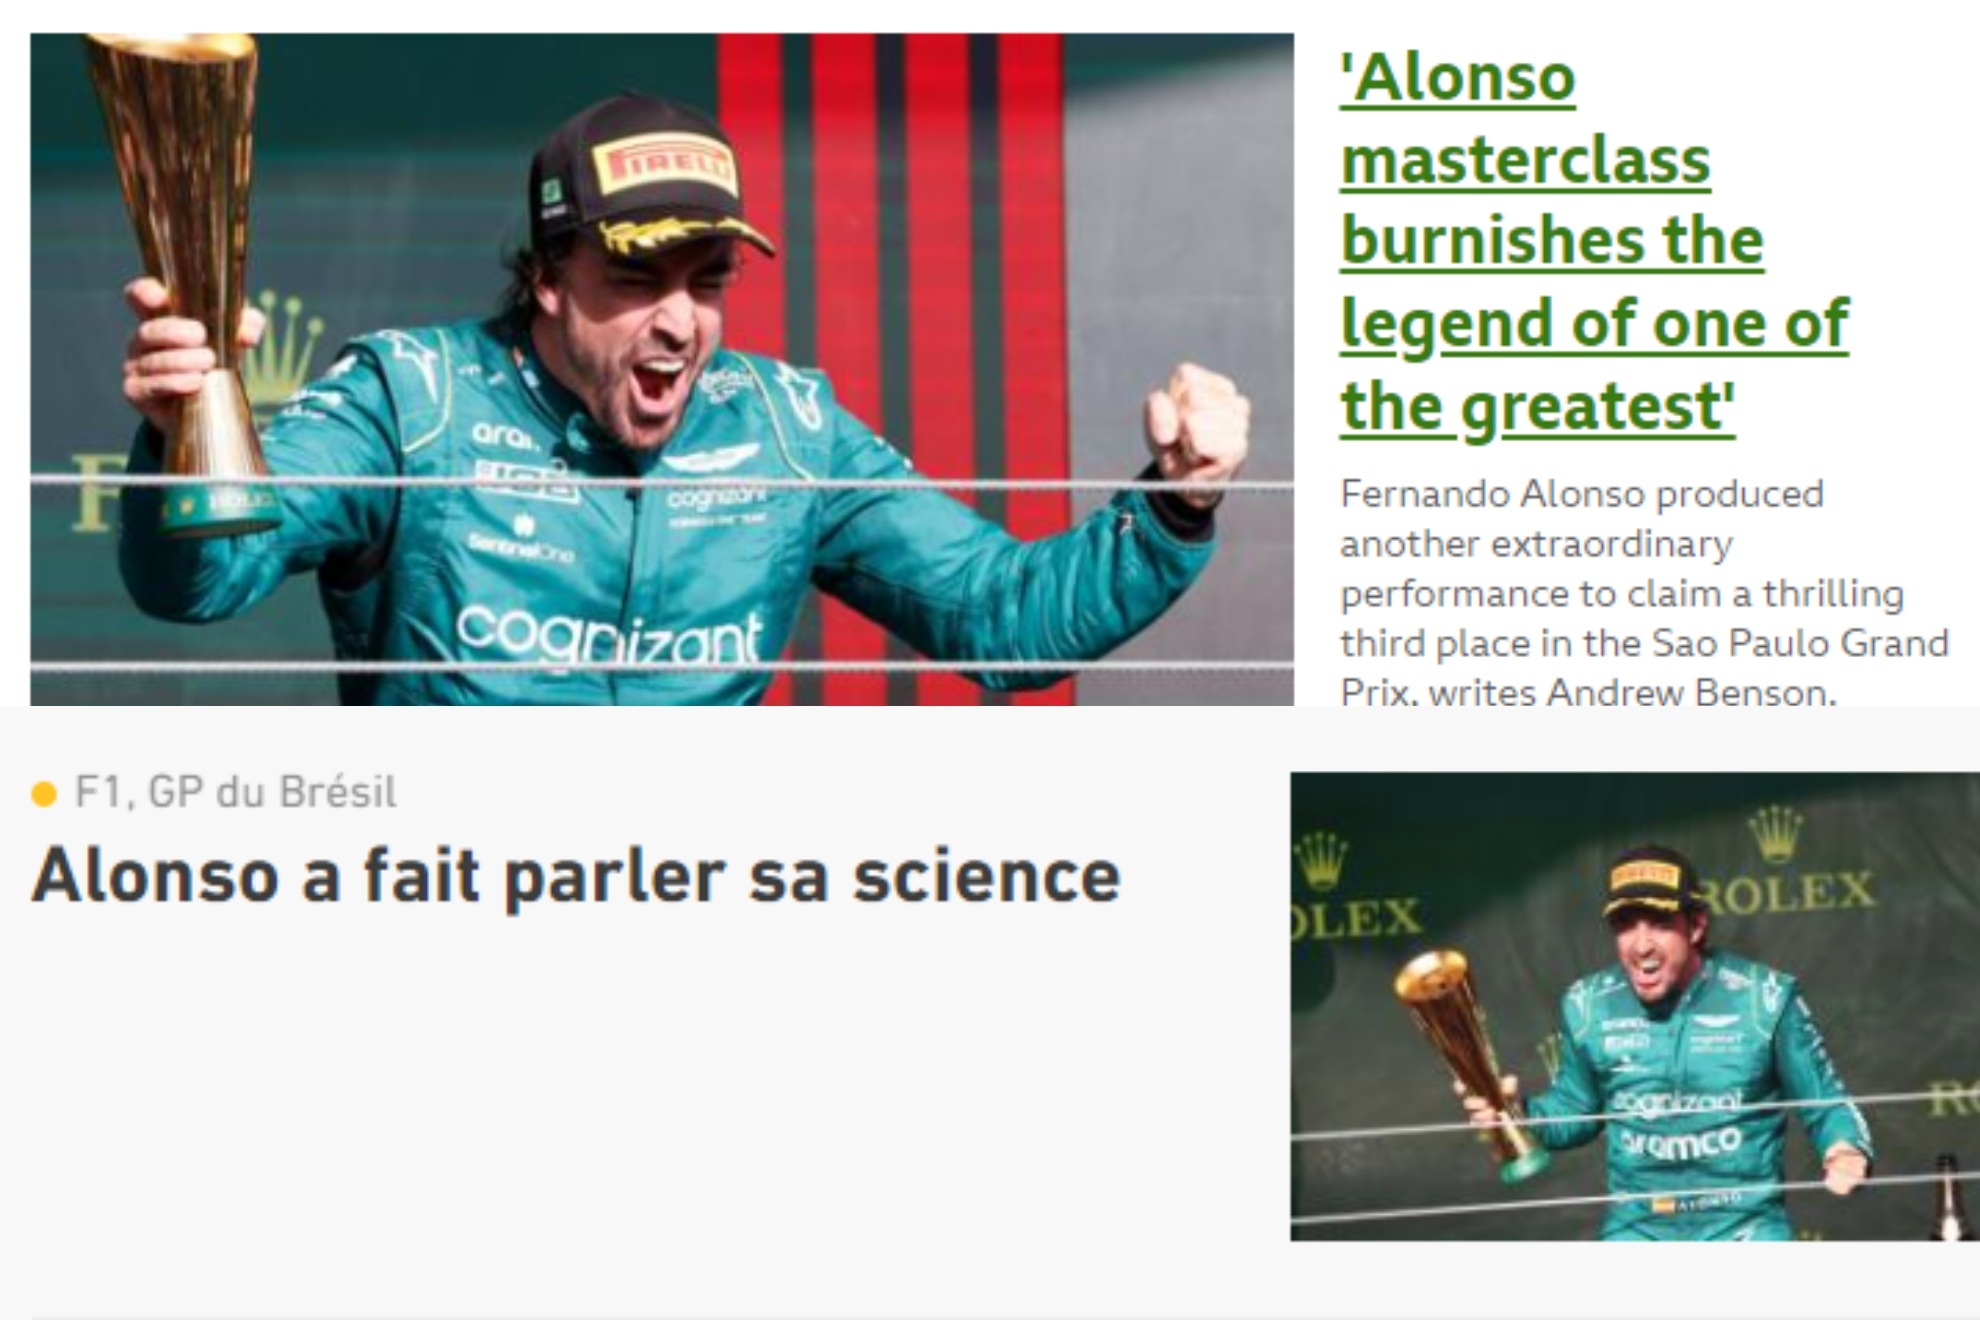 La prensa internacional se rinde a Alonso: "El talento no entiende de edades"